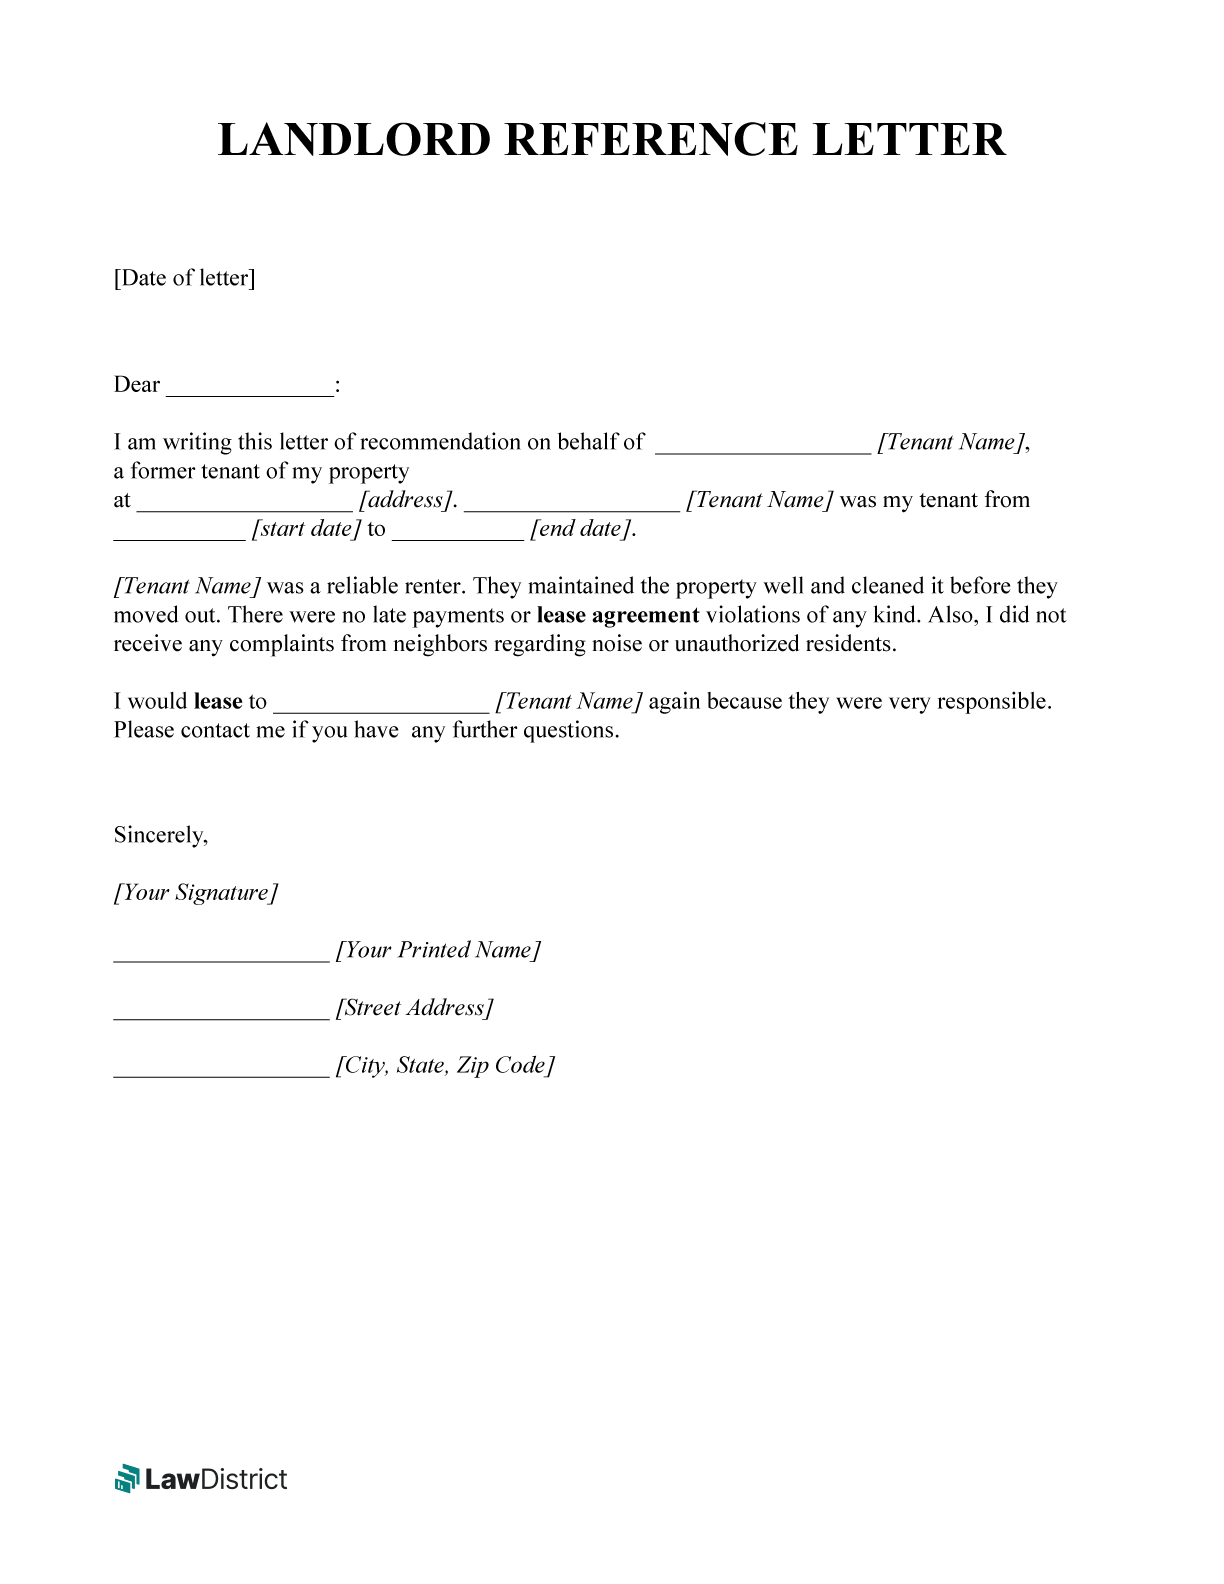 Landlord reference letter sample